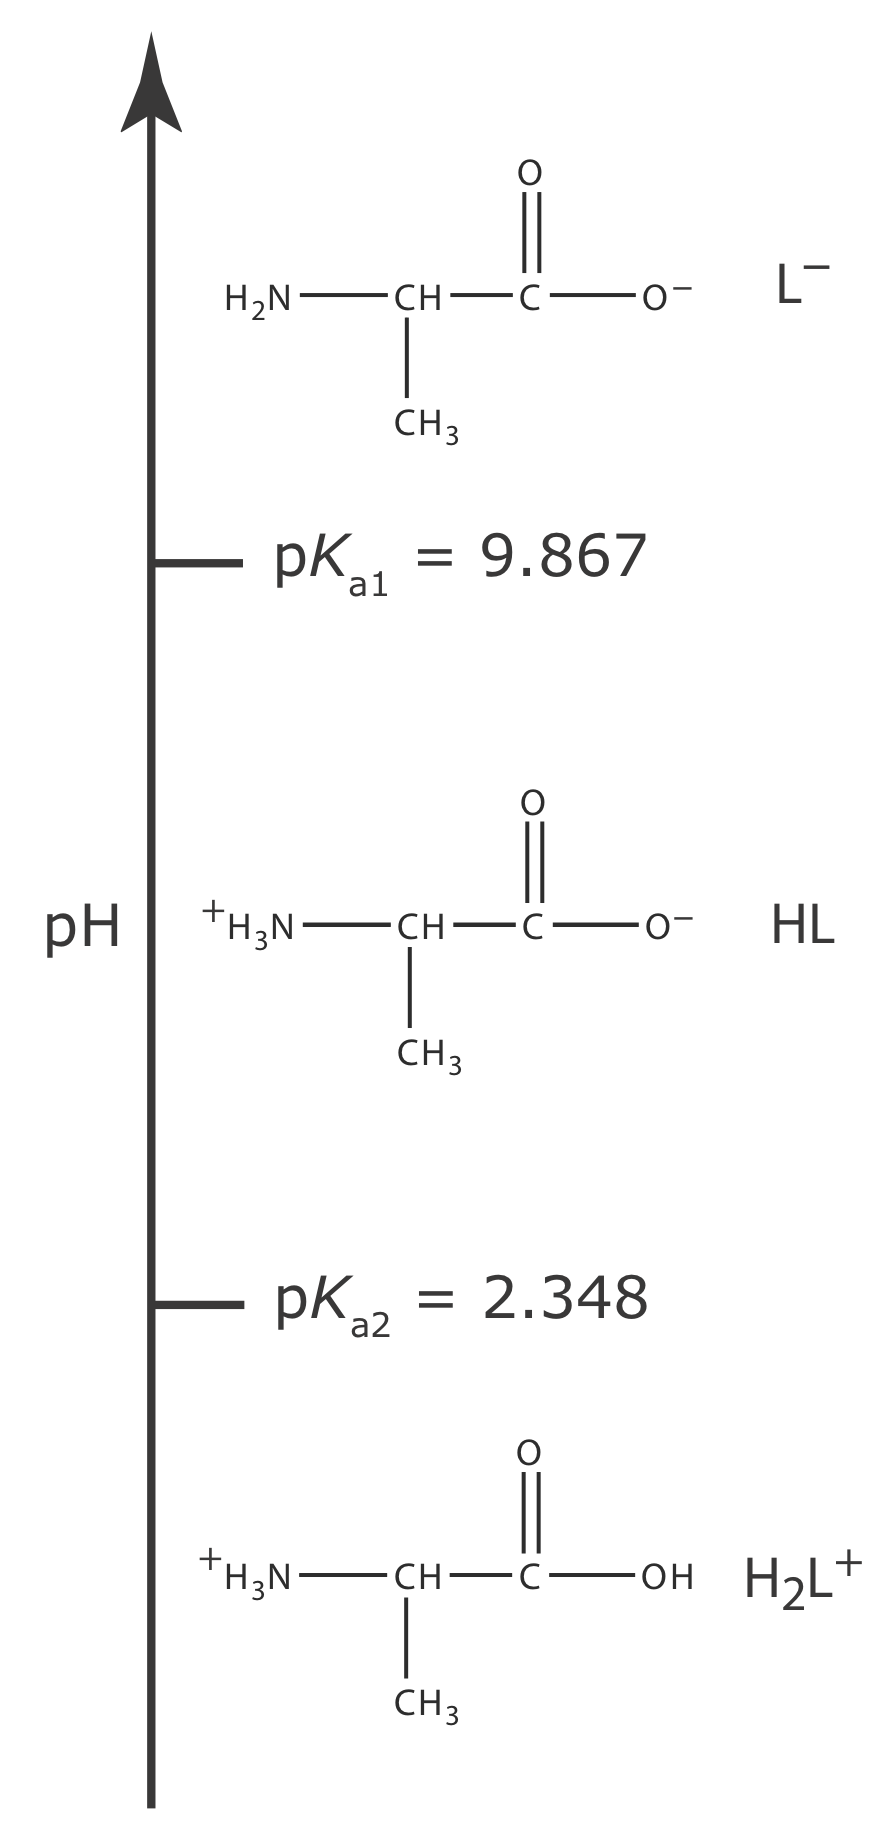 El pKa1 de Alanina es 9.867 y tiene un pKA2 de 2.348.